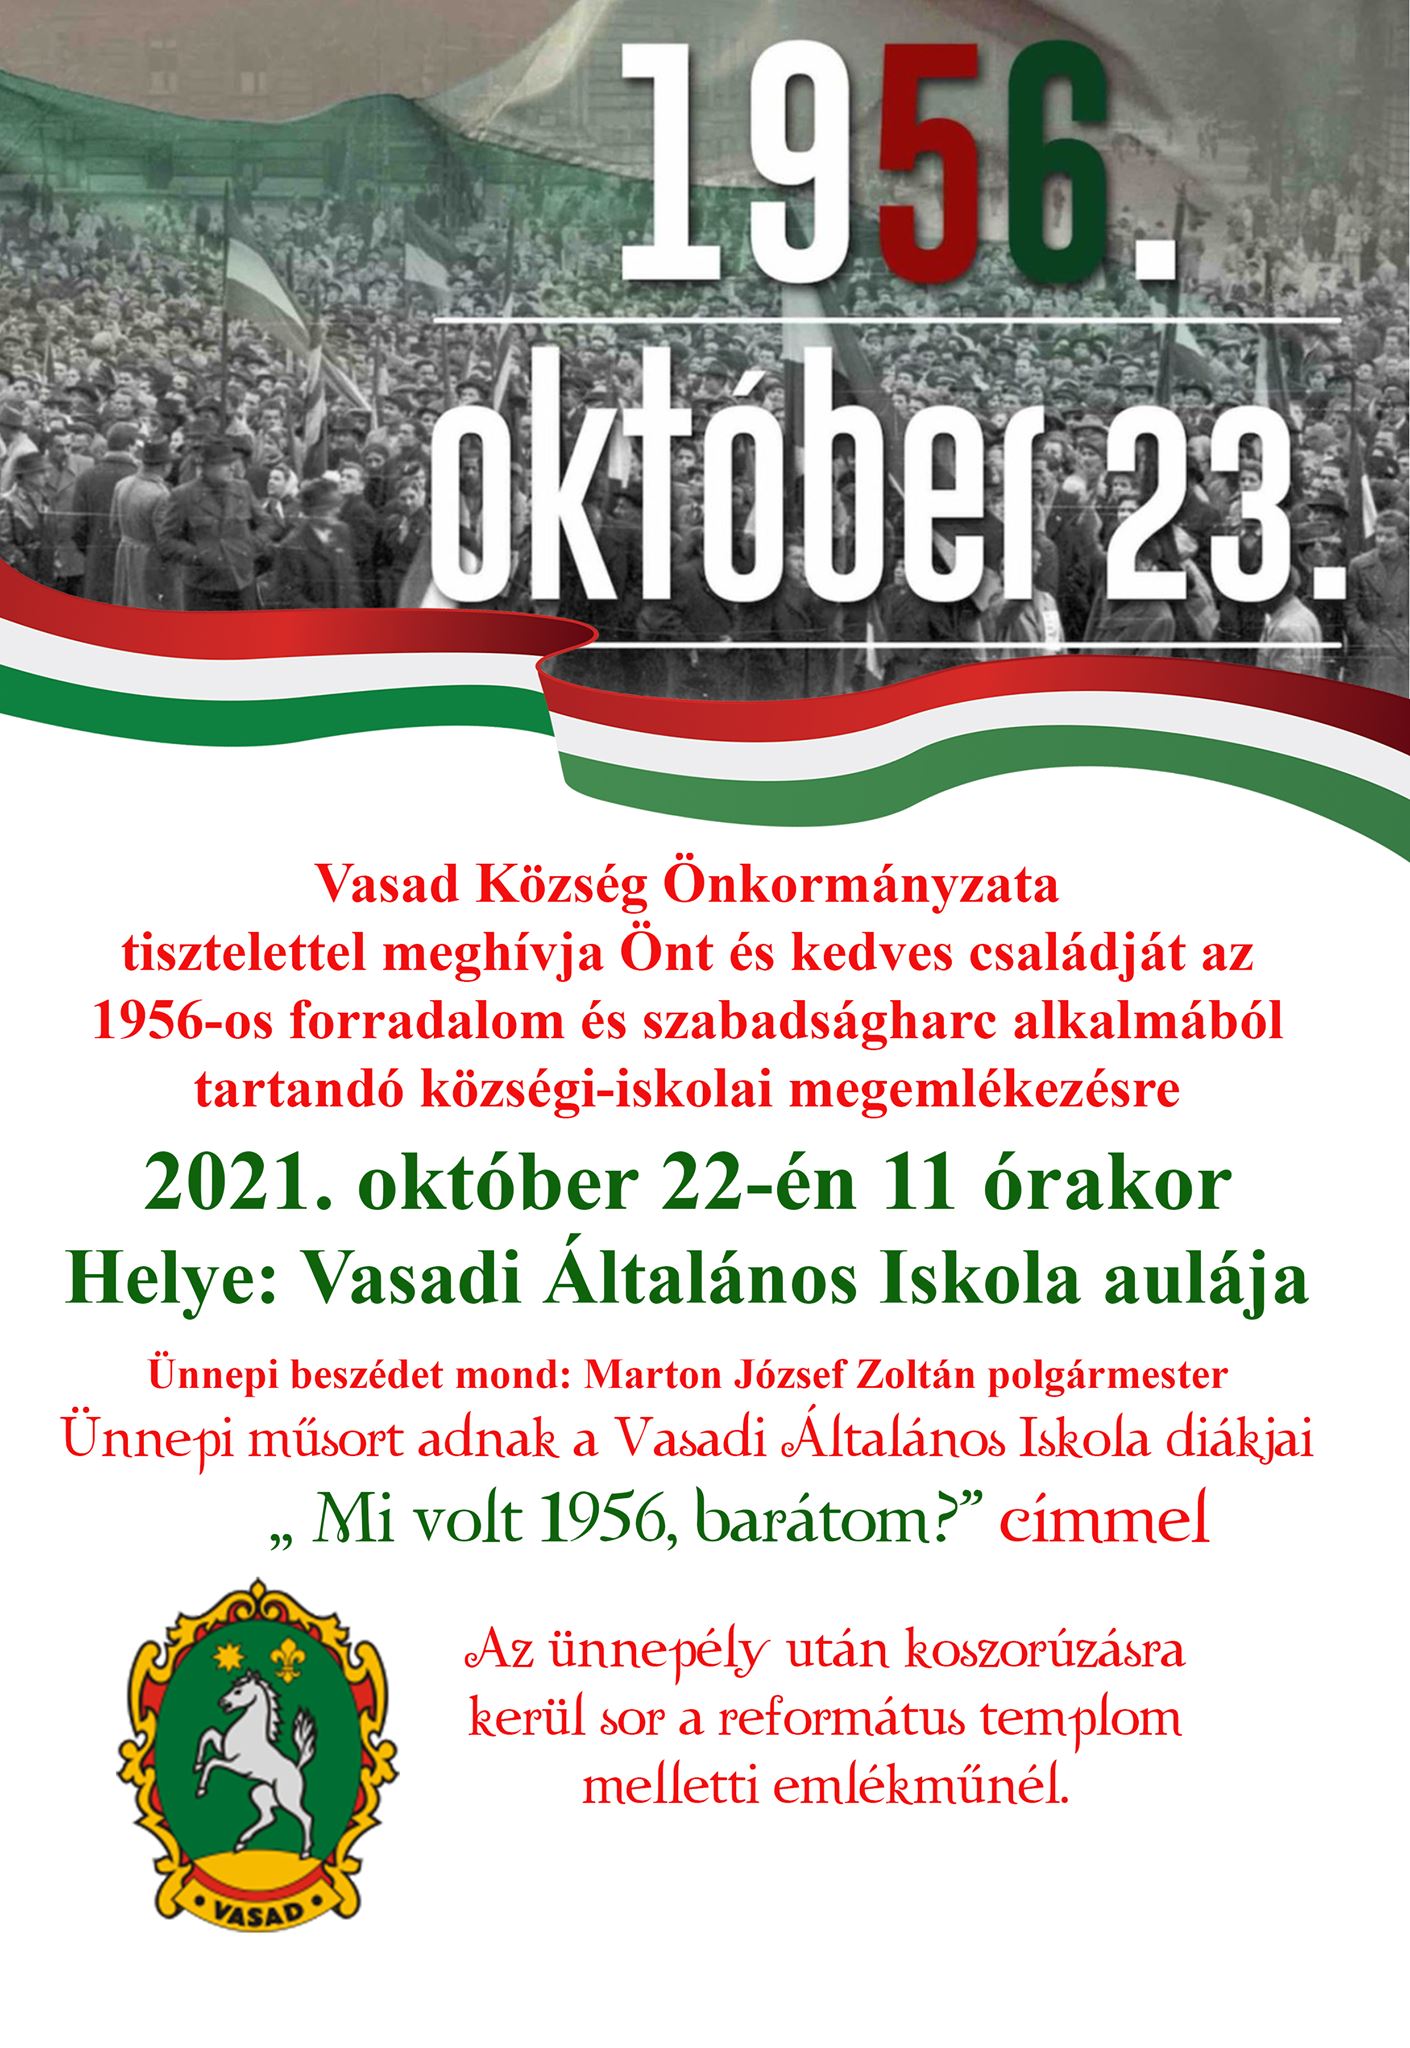 október 23. megemlékezés plakátja